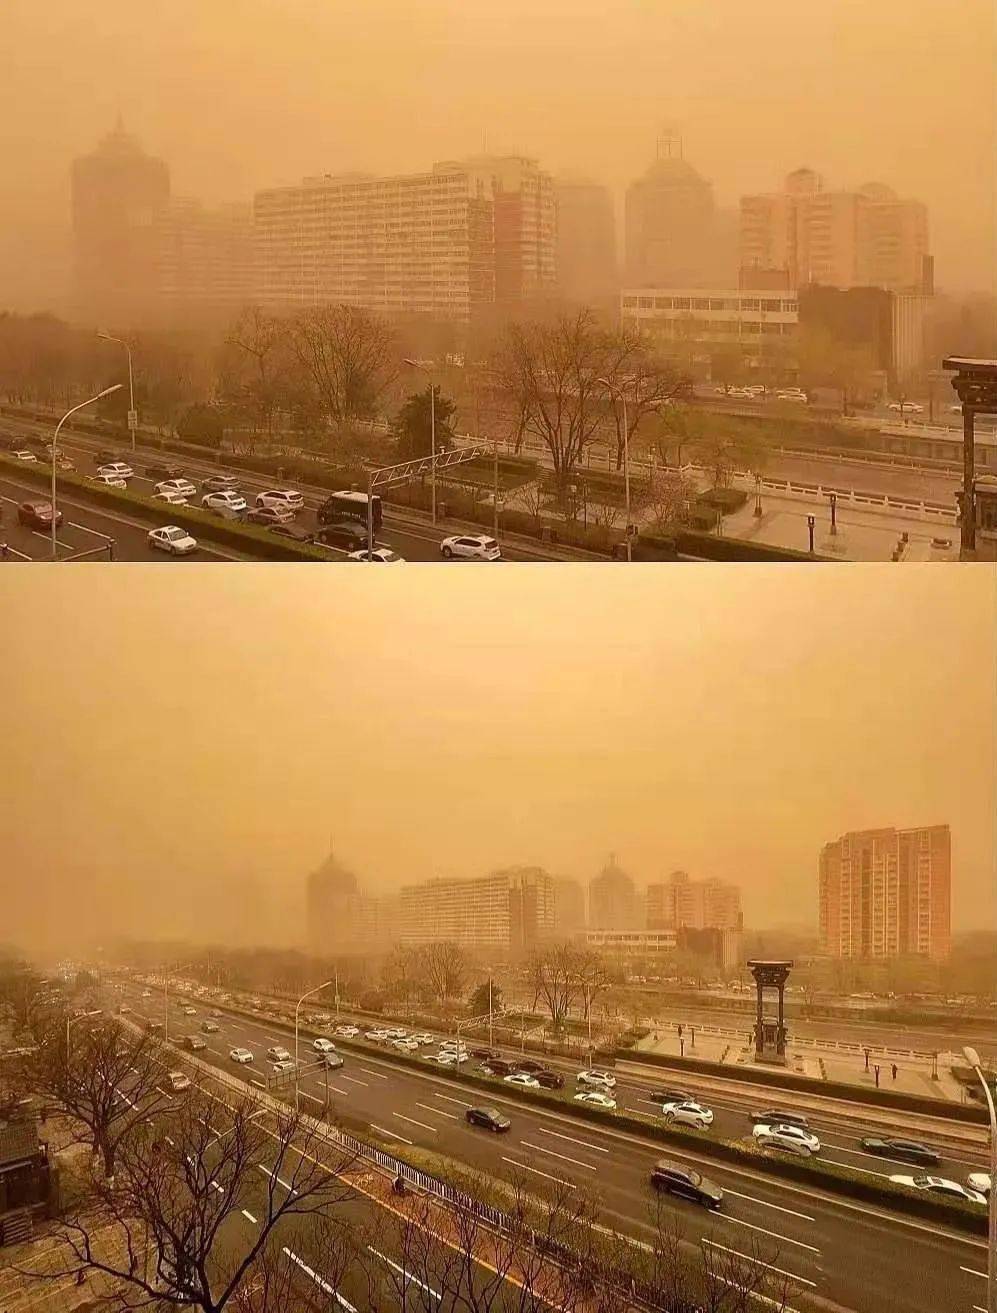 北京今日沙尘为近十年最强一次,已达到强沙尘暴级别!